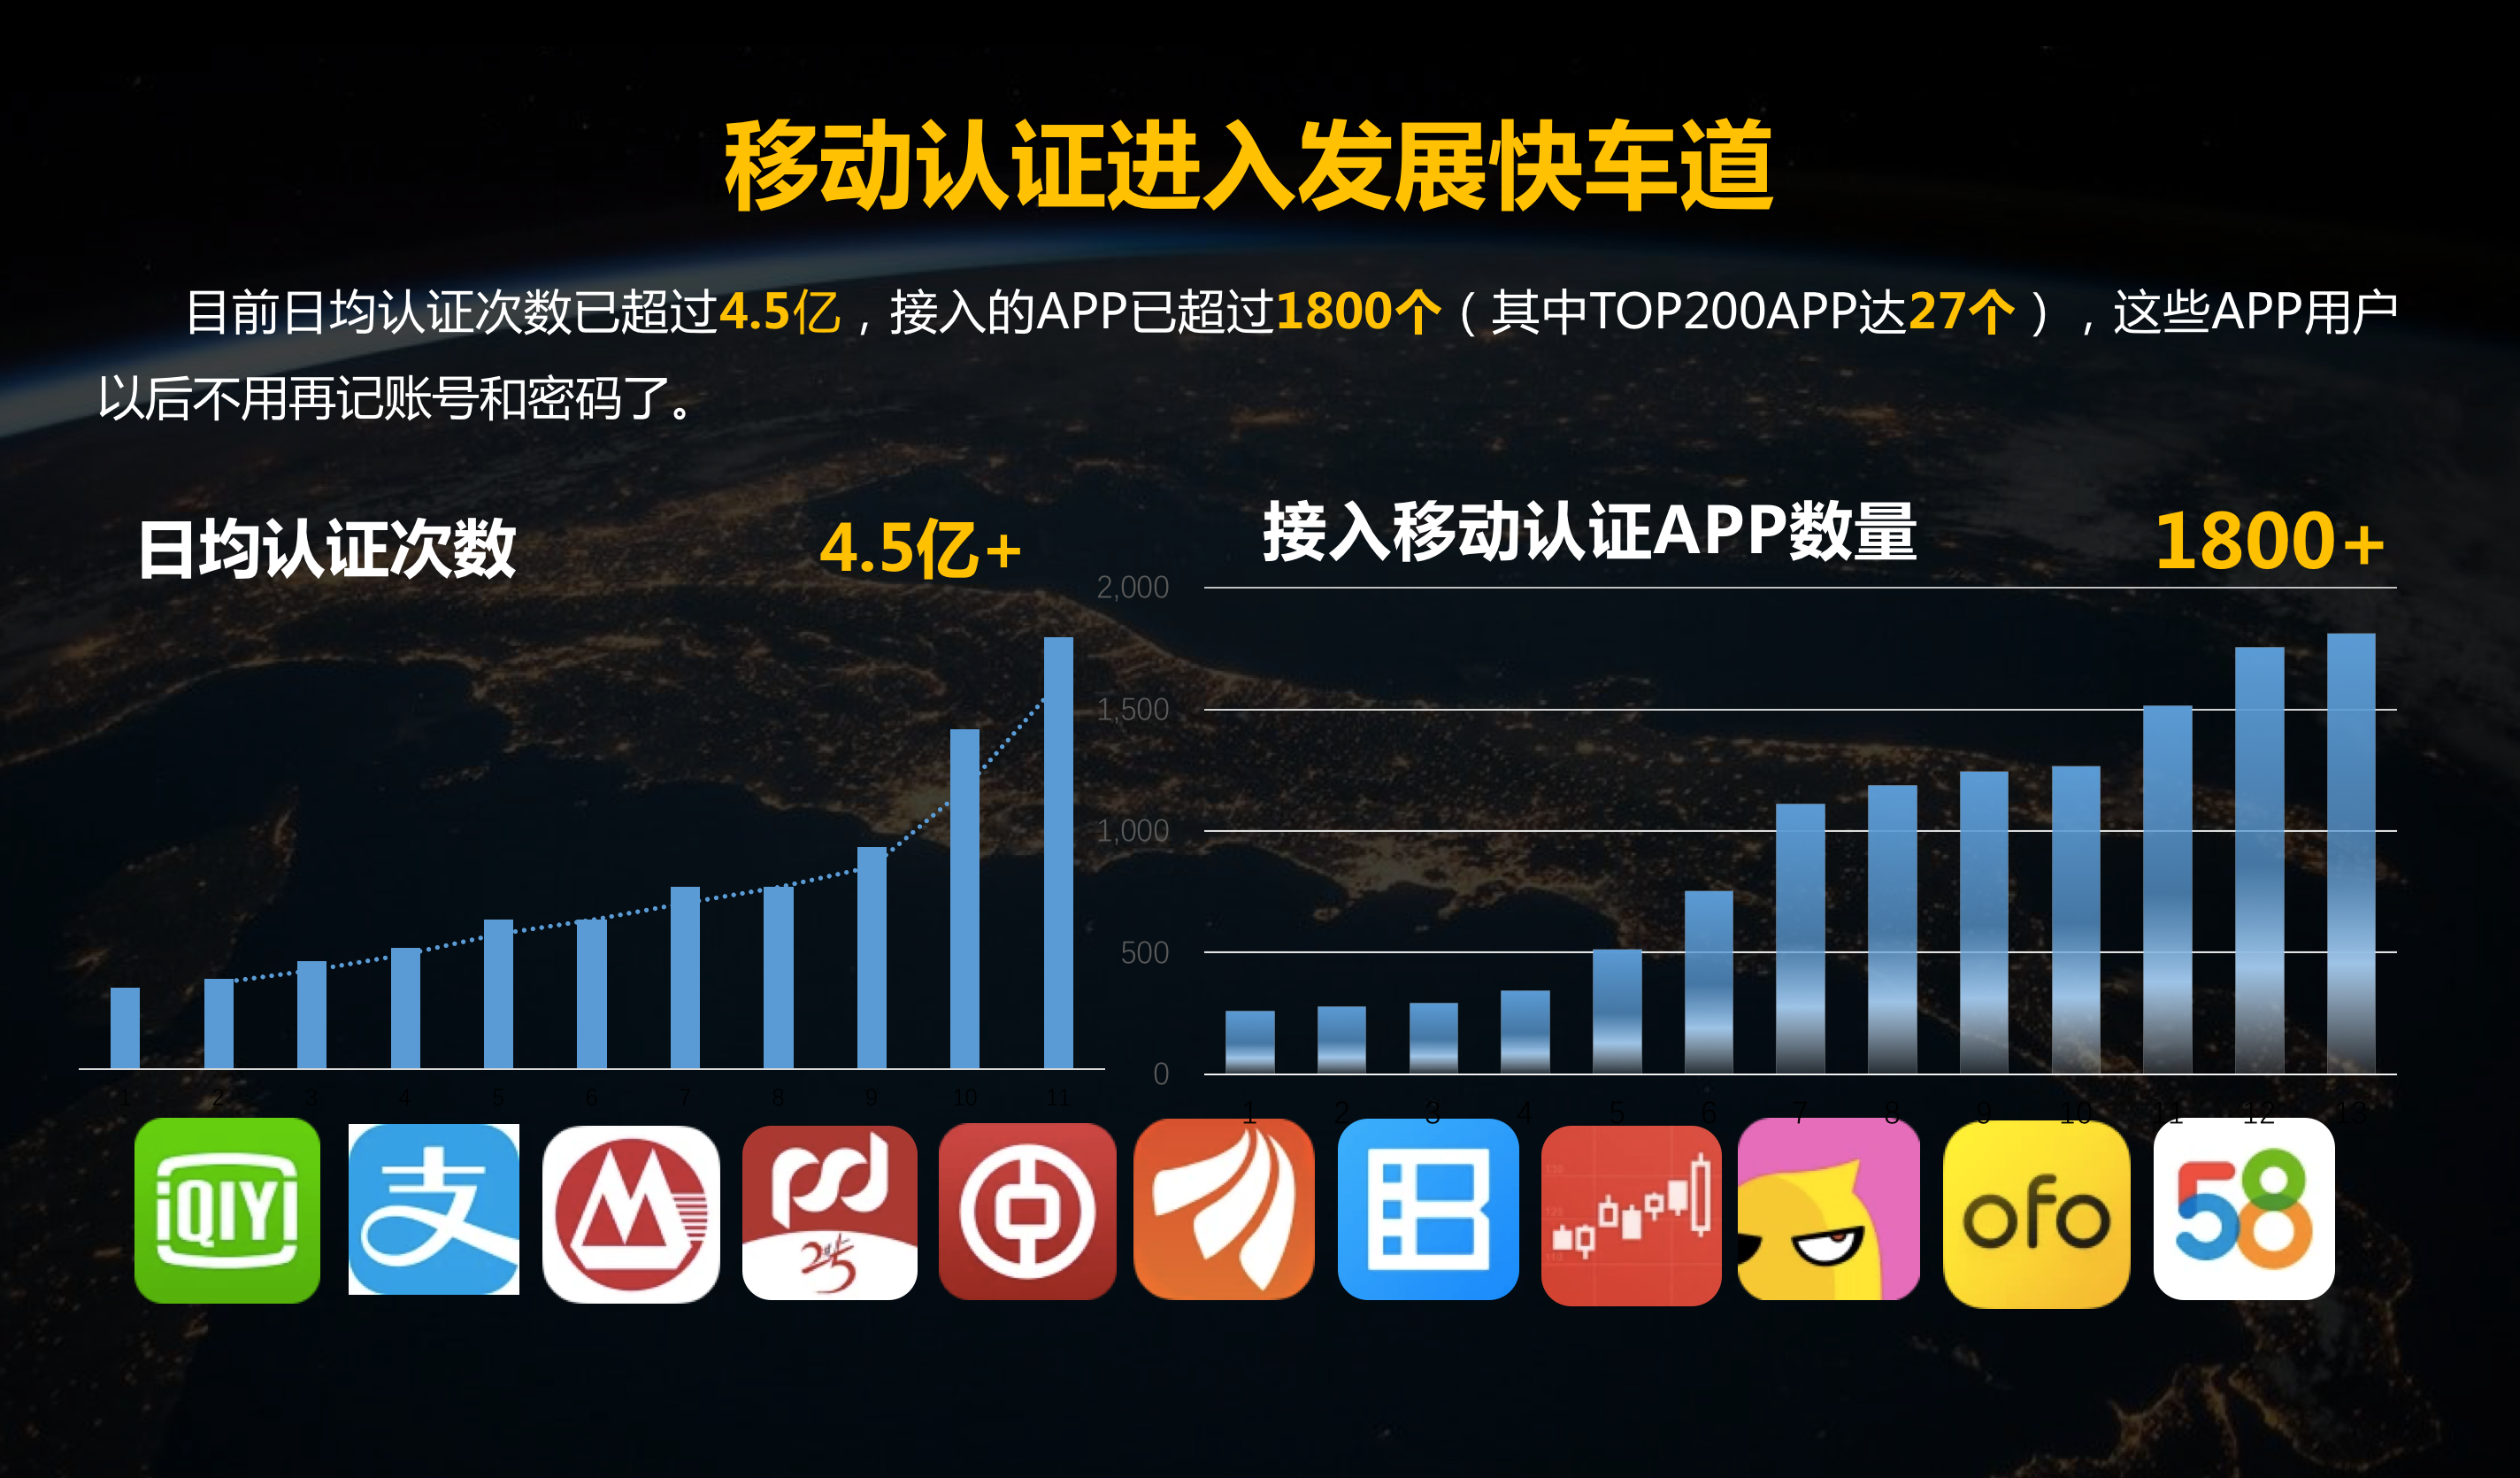 闪耀2018中国互联网大会,登录1800余款APP无